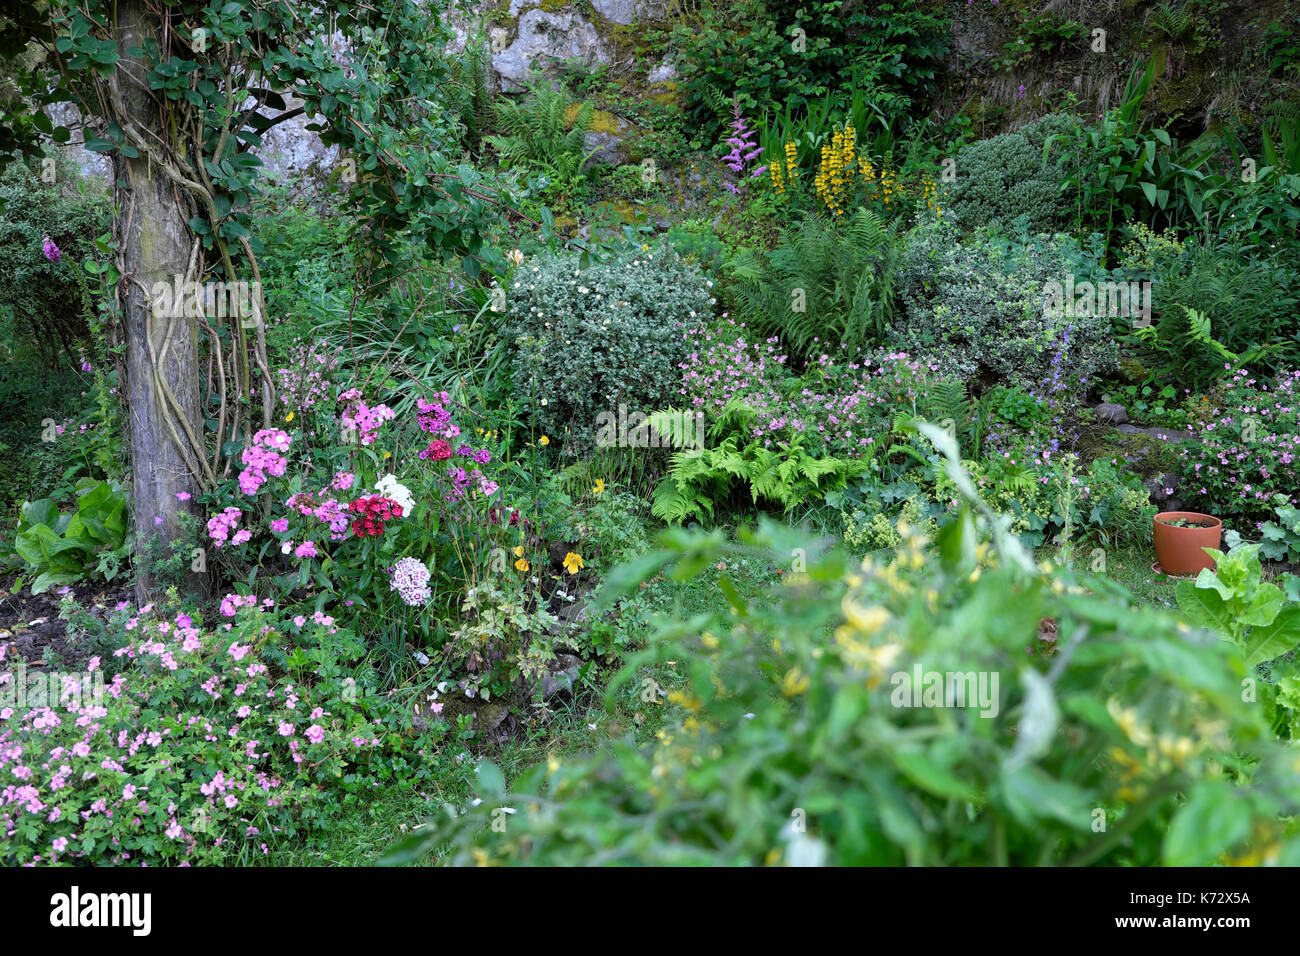 Jardin de rocaille vivaces en fleurs avec sweet williams, honeysuckle rose, rose géranium escalade en juillet à la frontière dans les régions rurales du pays de Galles UK KATHY DEWITT Banque D'Images